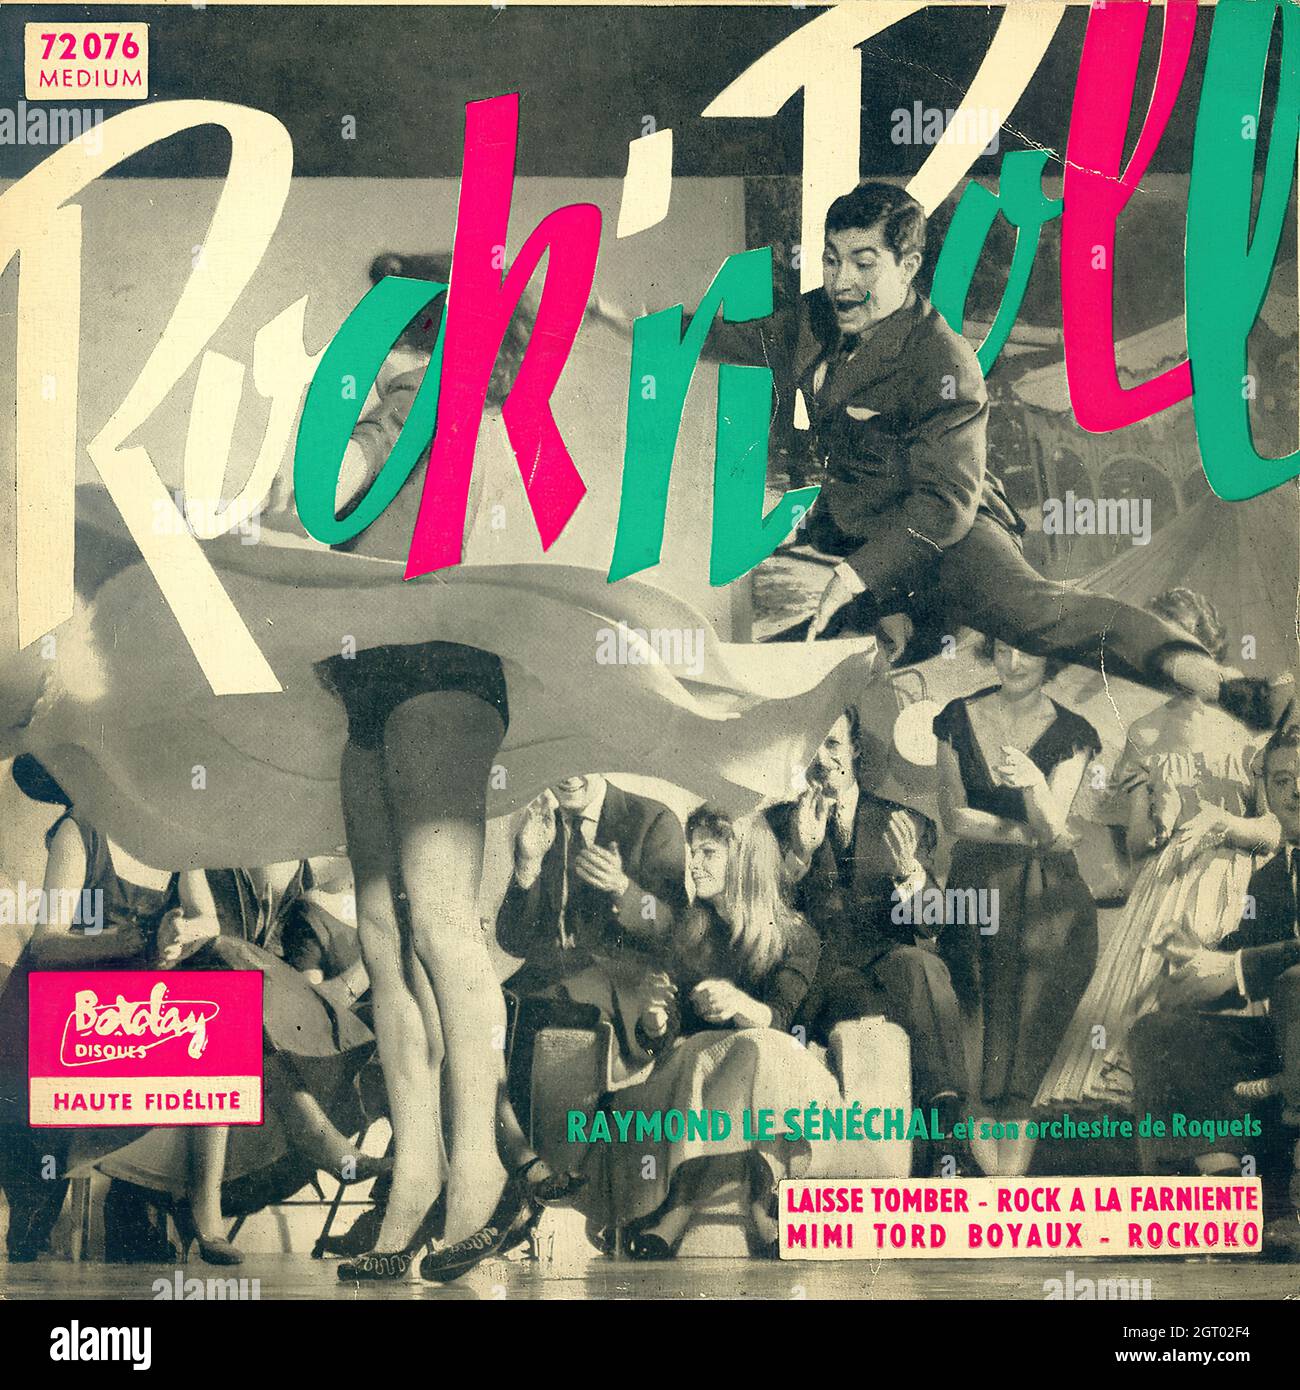 Raymond le Sénéchal et son Orchestre de Roquets - Rock'n Roll EP - Vintage Vinyl Record Cover Banque D'Images